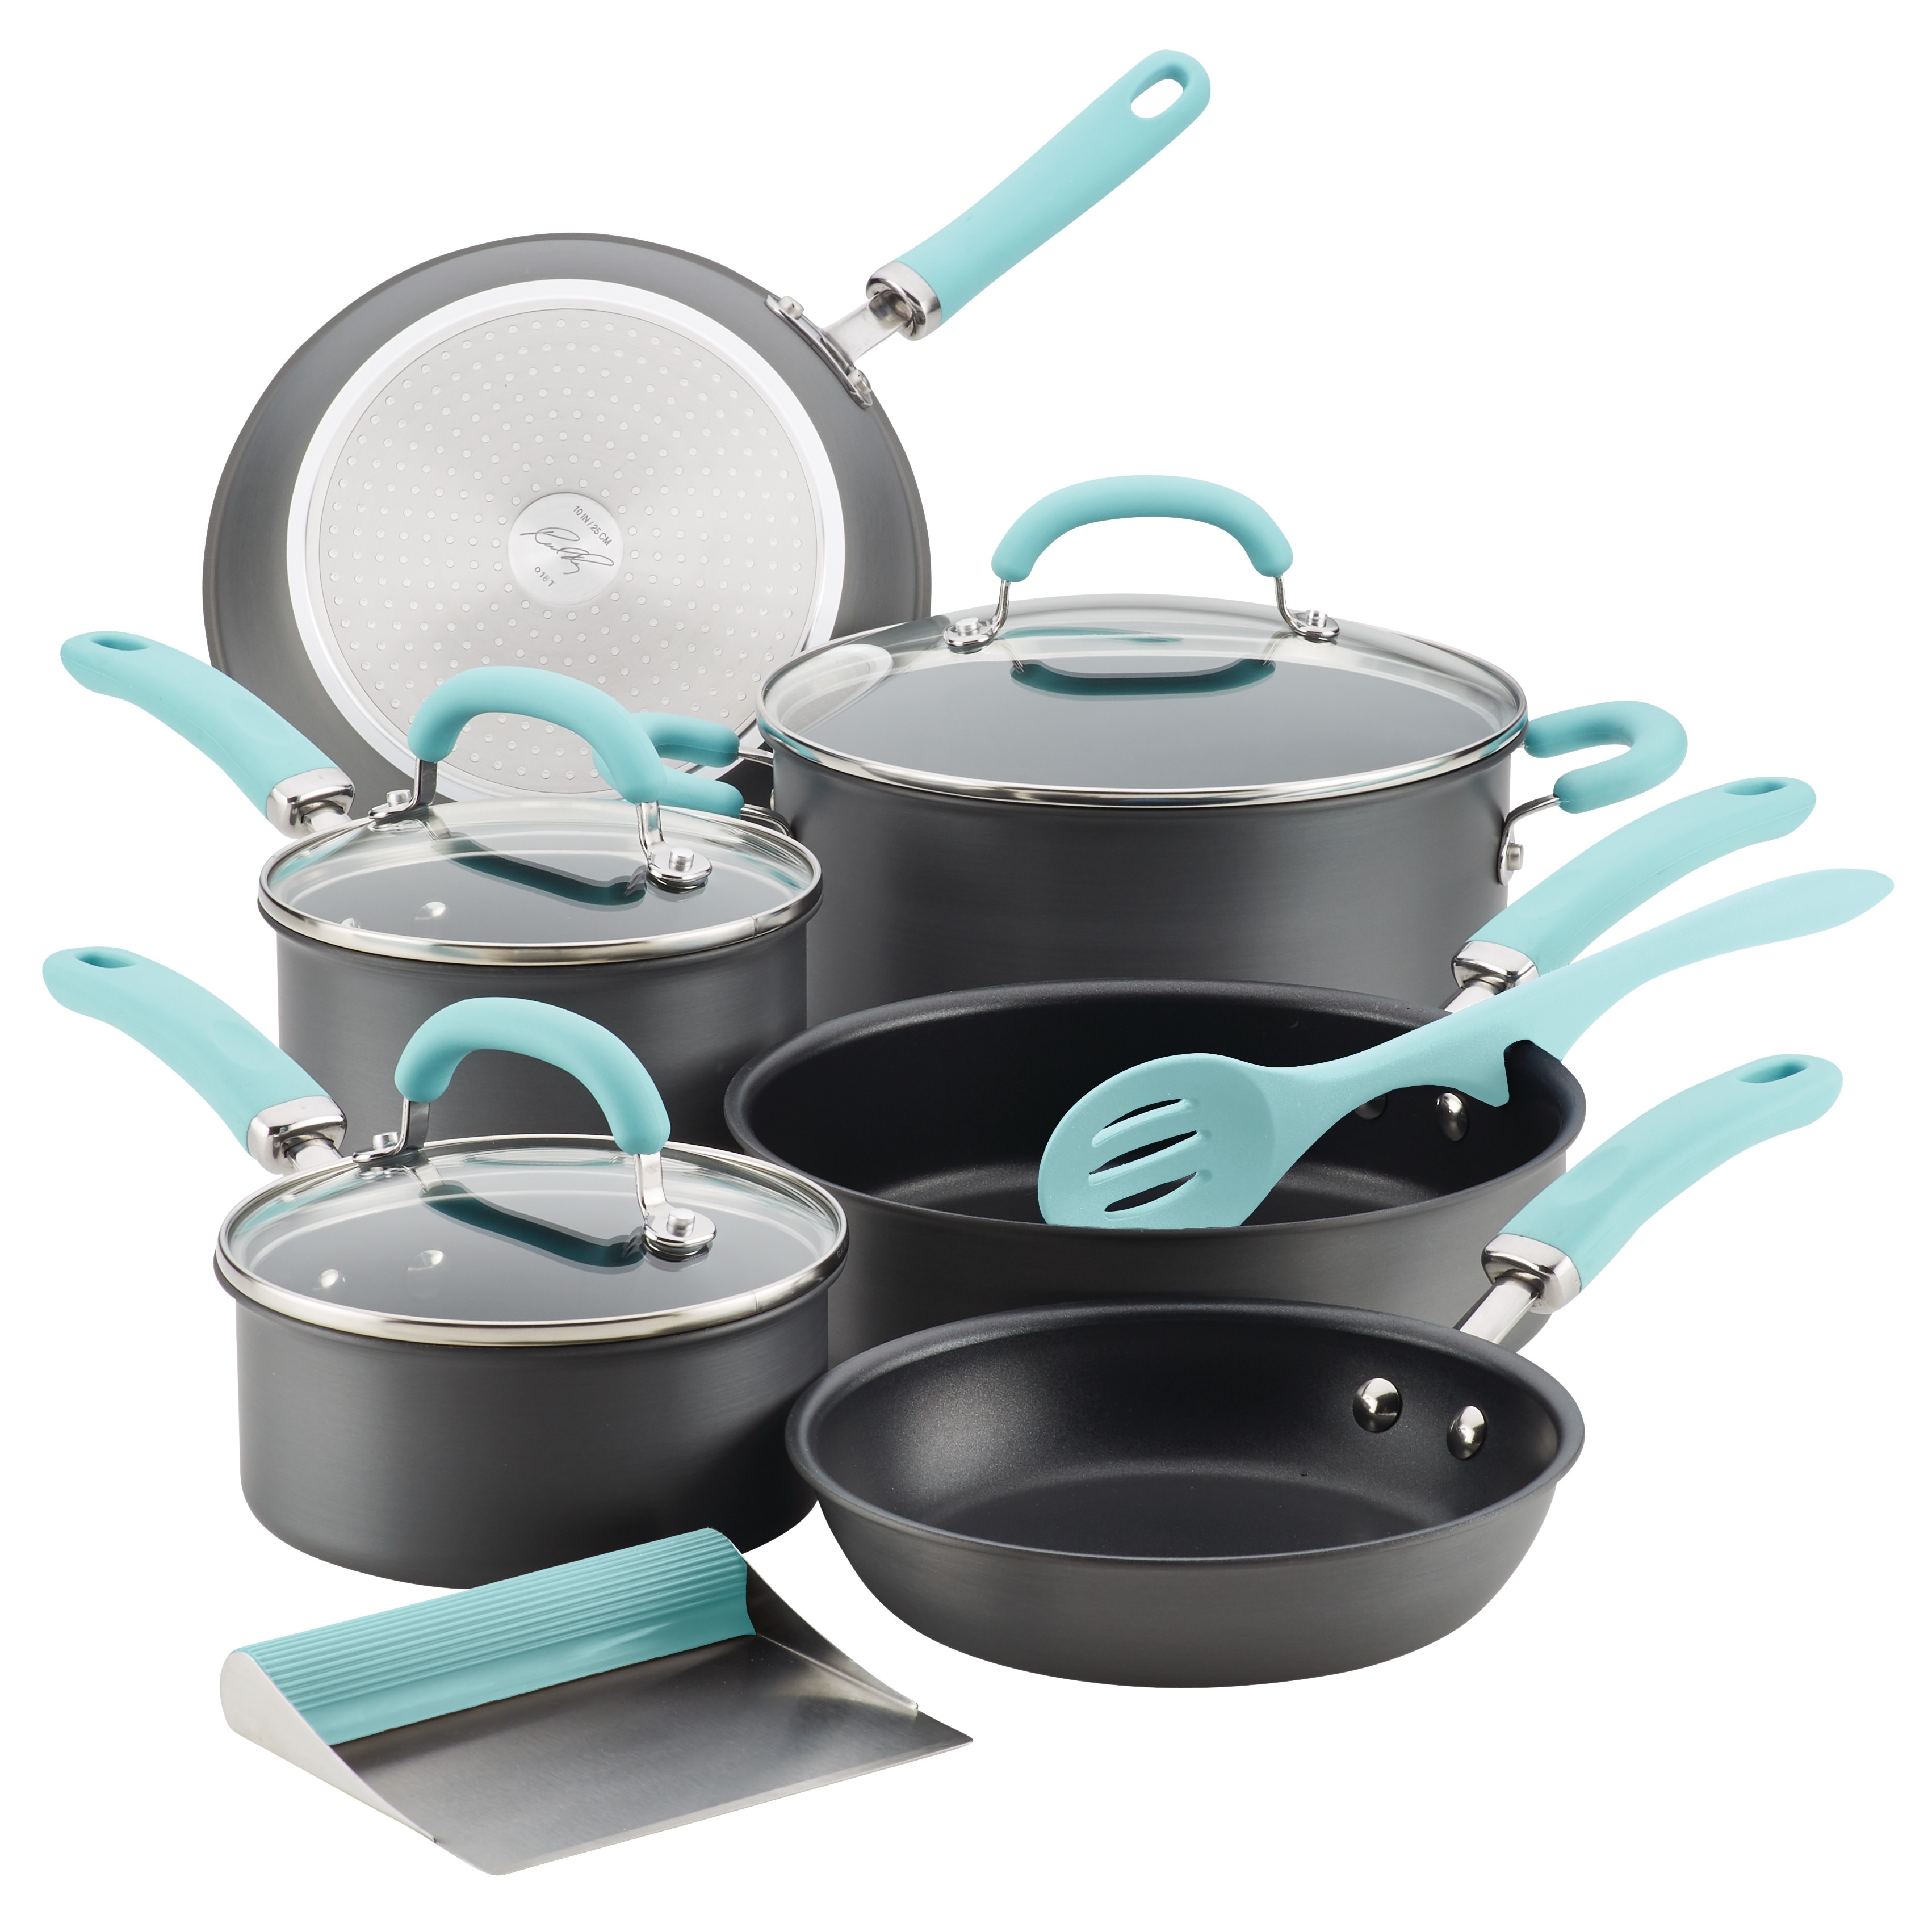  Paula Deen Signature Nonstick Cookware Pots and Pans Set, 15  Piece, Red: Home & Kitchen